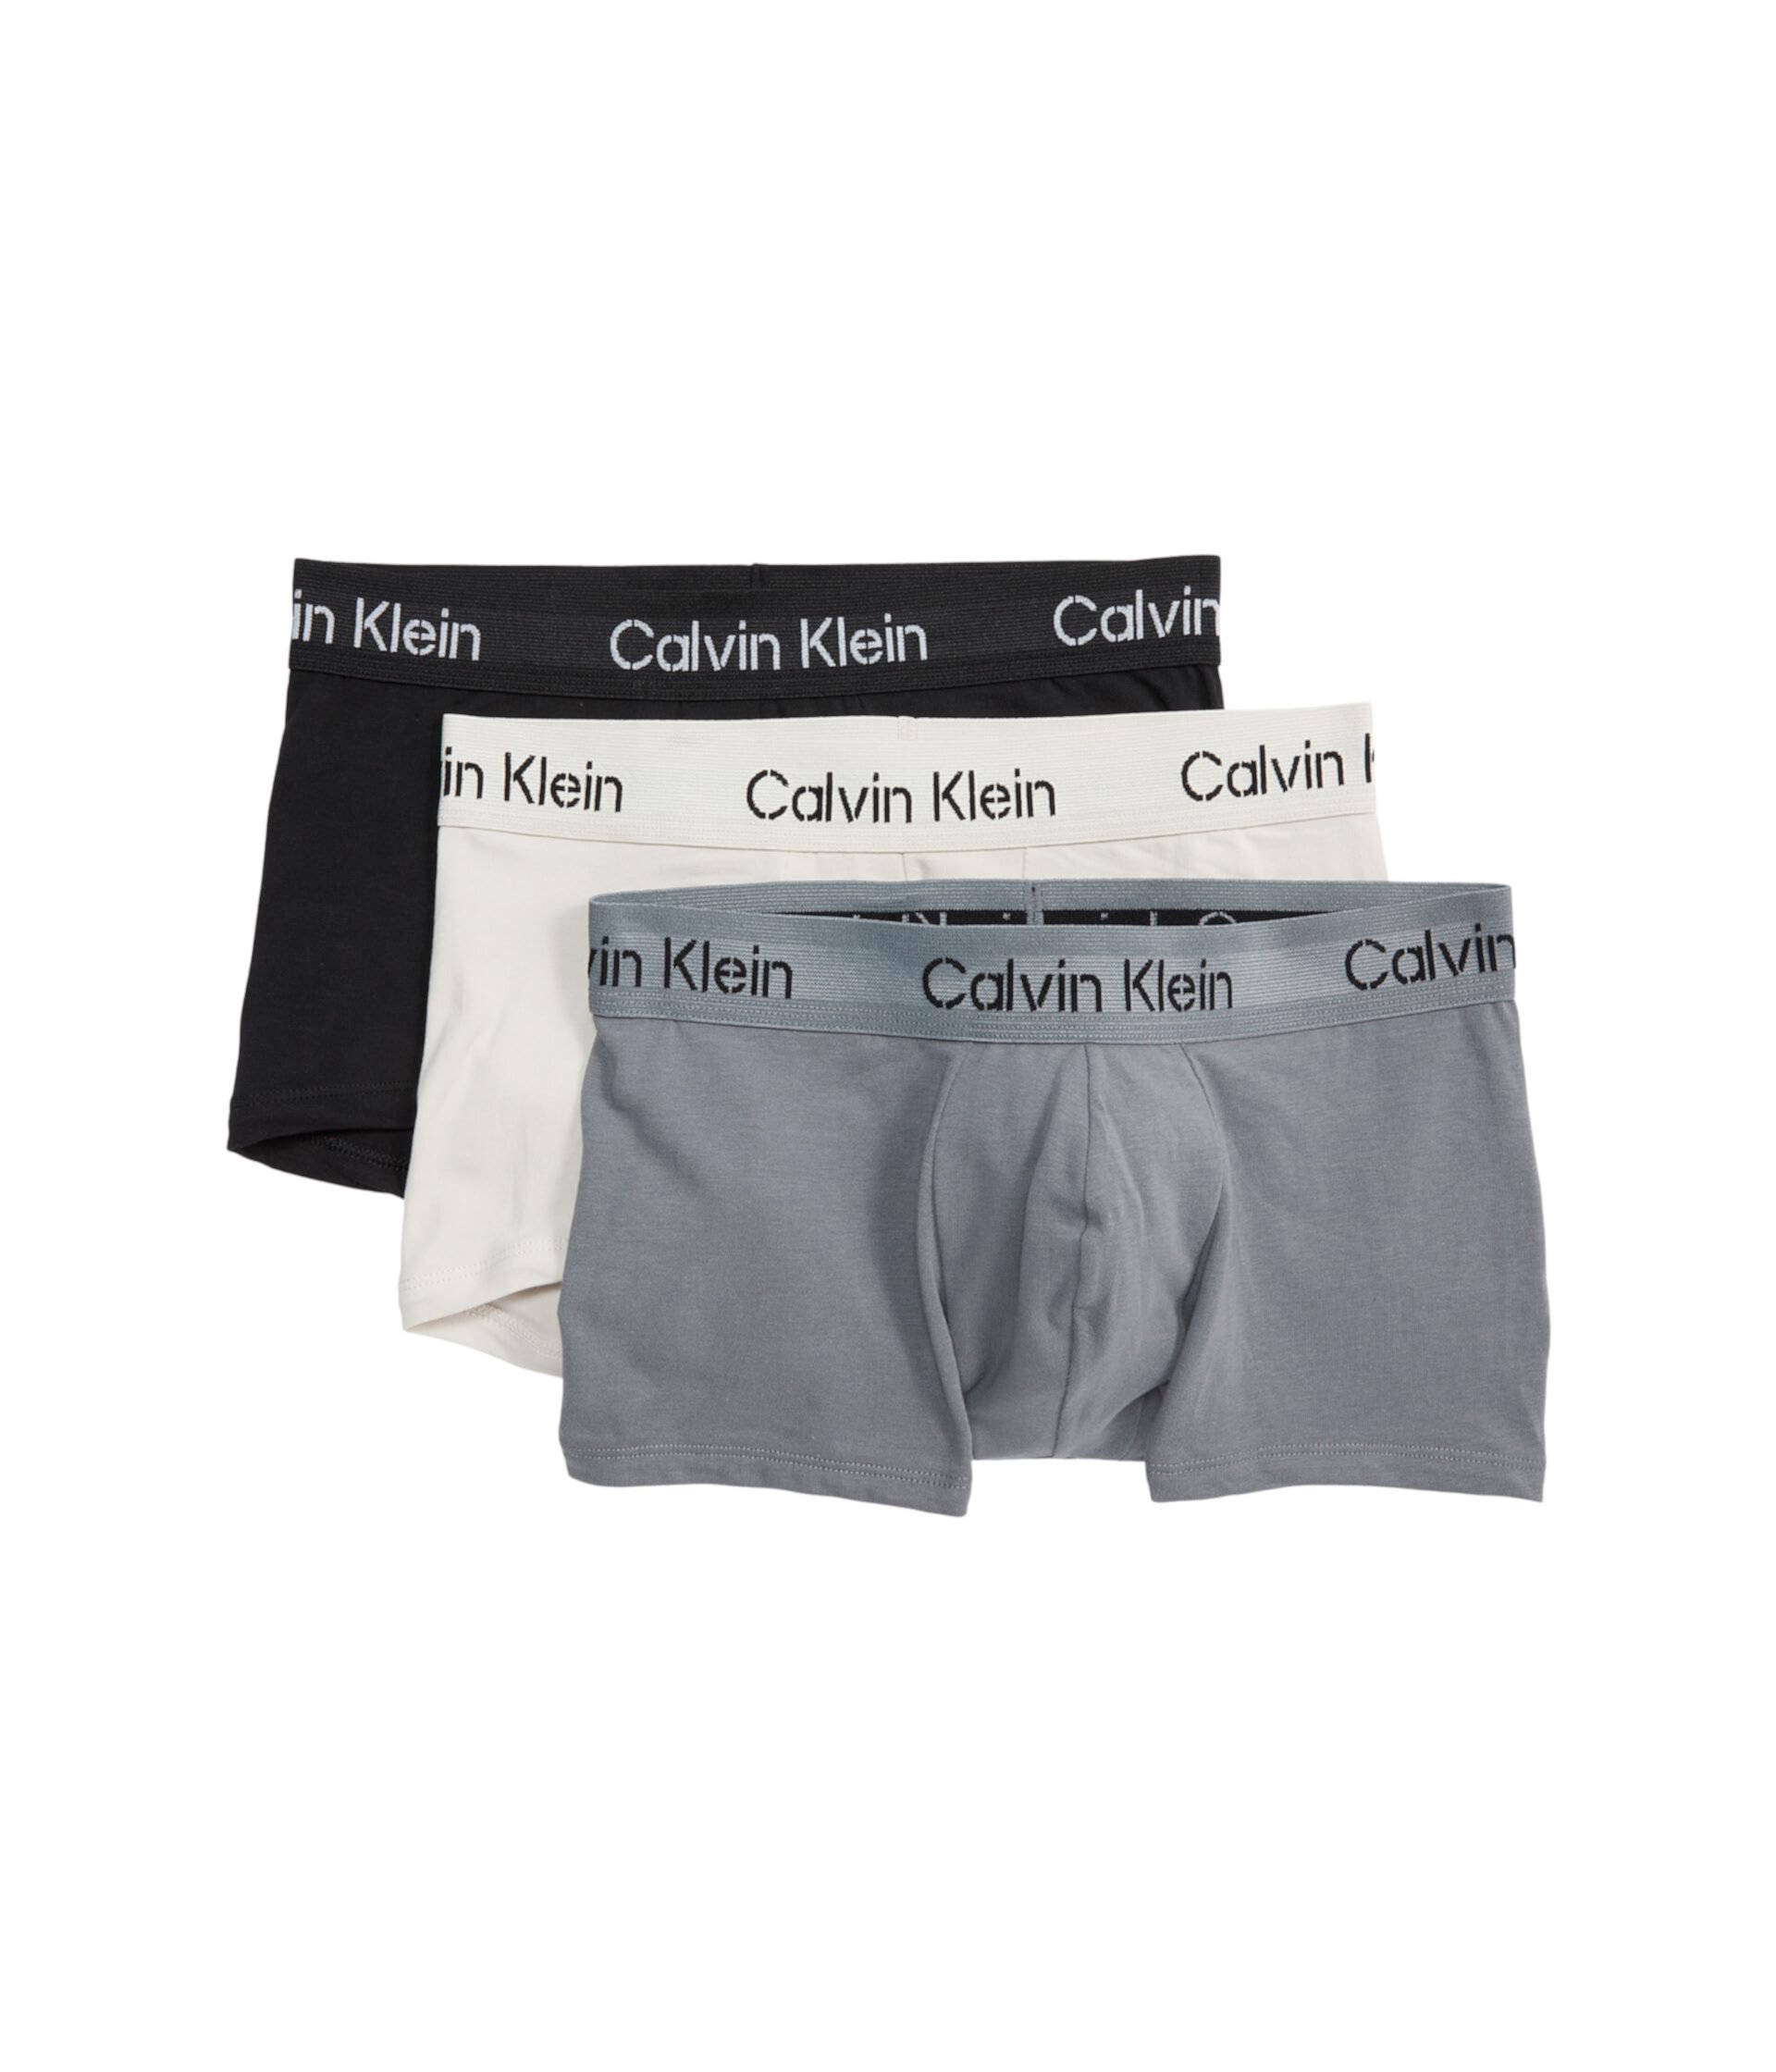 Мужские Трусы Calvin Klein из Хлопка с Низкой Посадкой, Упаковка из 3 Штук Calvin Klein